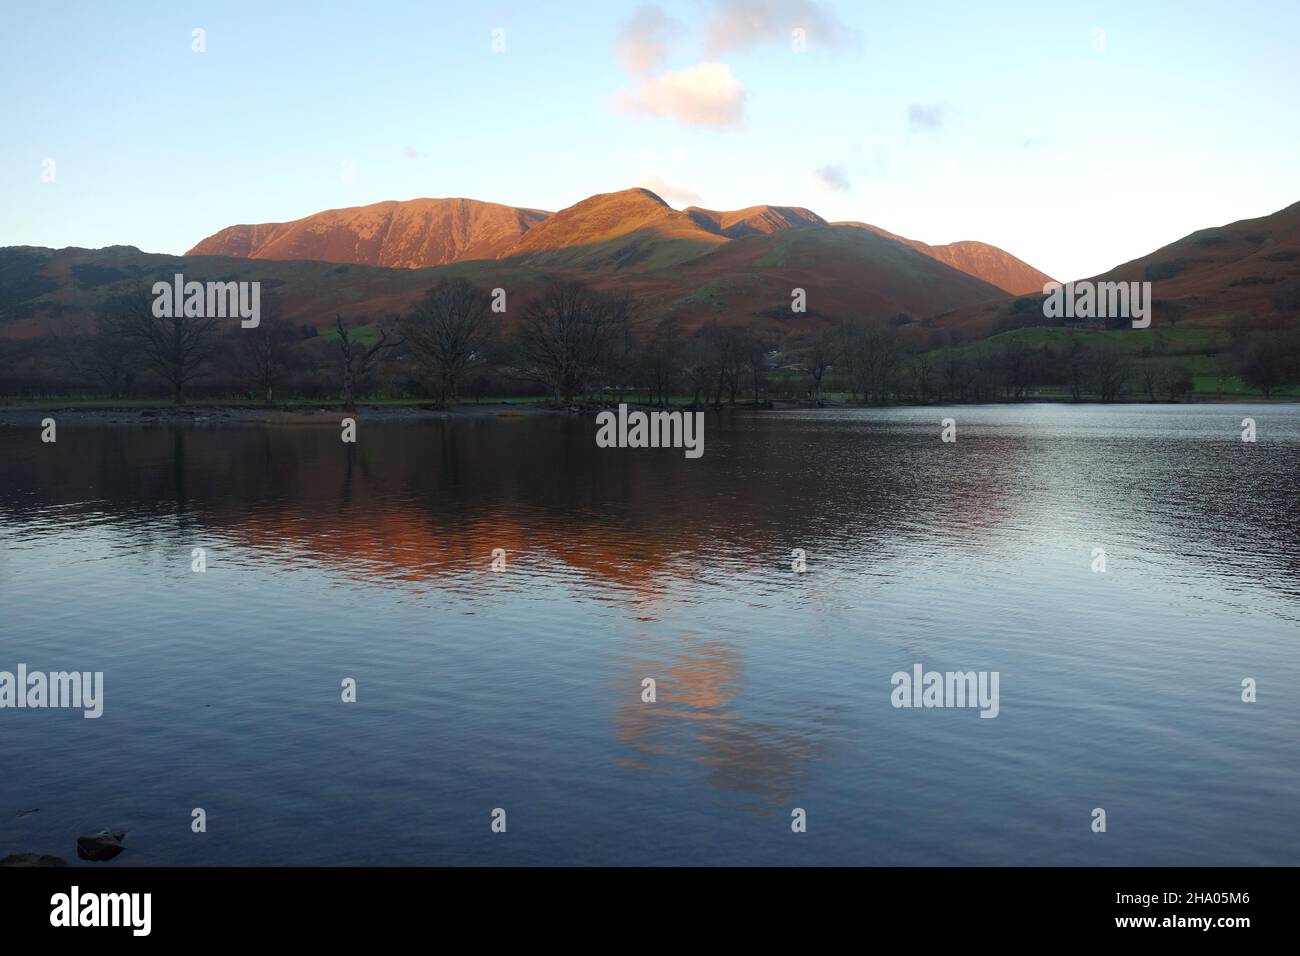 Réflexions de la chaîne de montagnes 'Grasmoor' de Wainwright Hills depuis le lac Buttermere à Dusk dans le parc national Lake District, Cumbria, Angleterre, Royaume-Uni. Banque D'Images